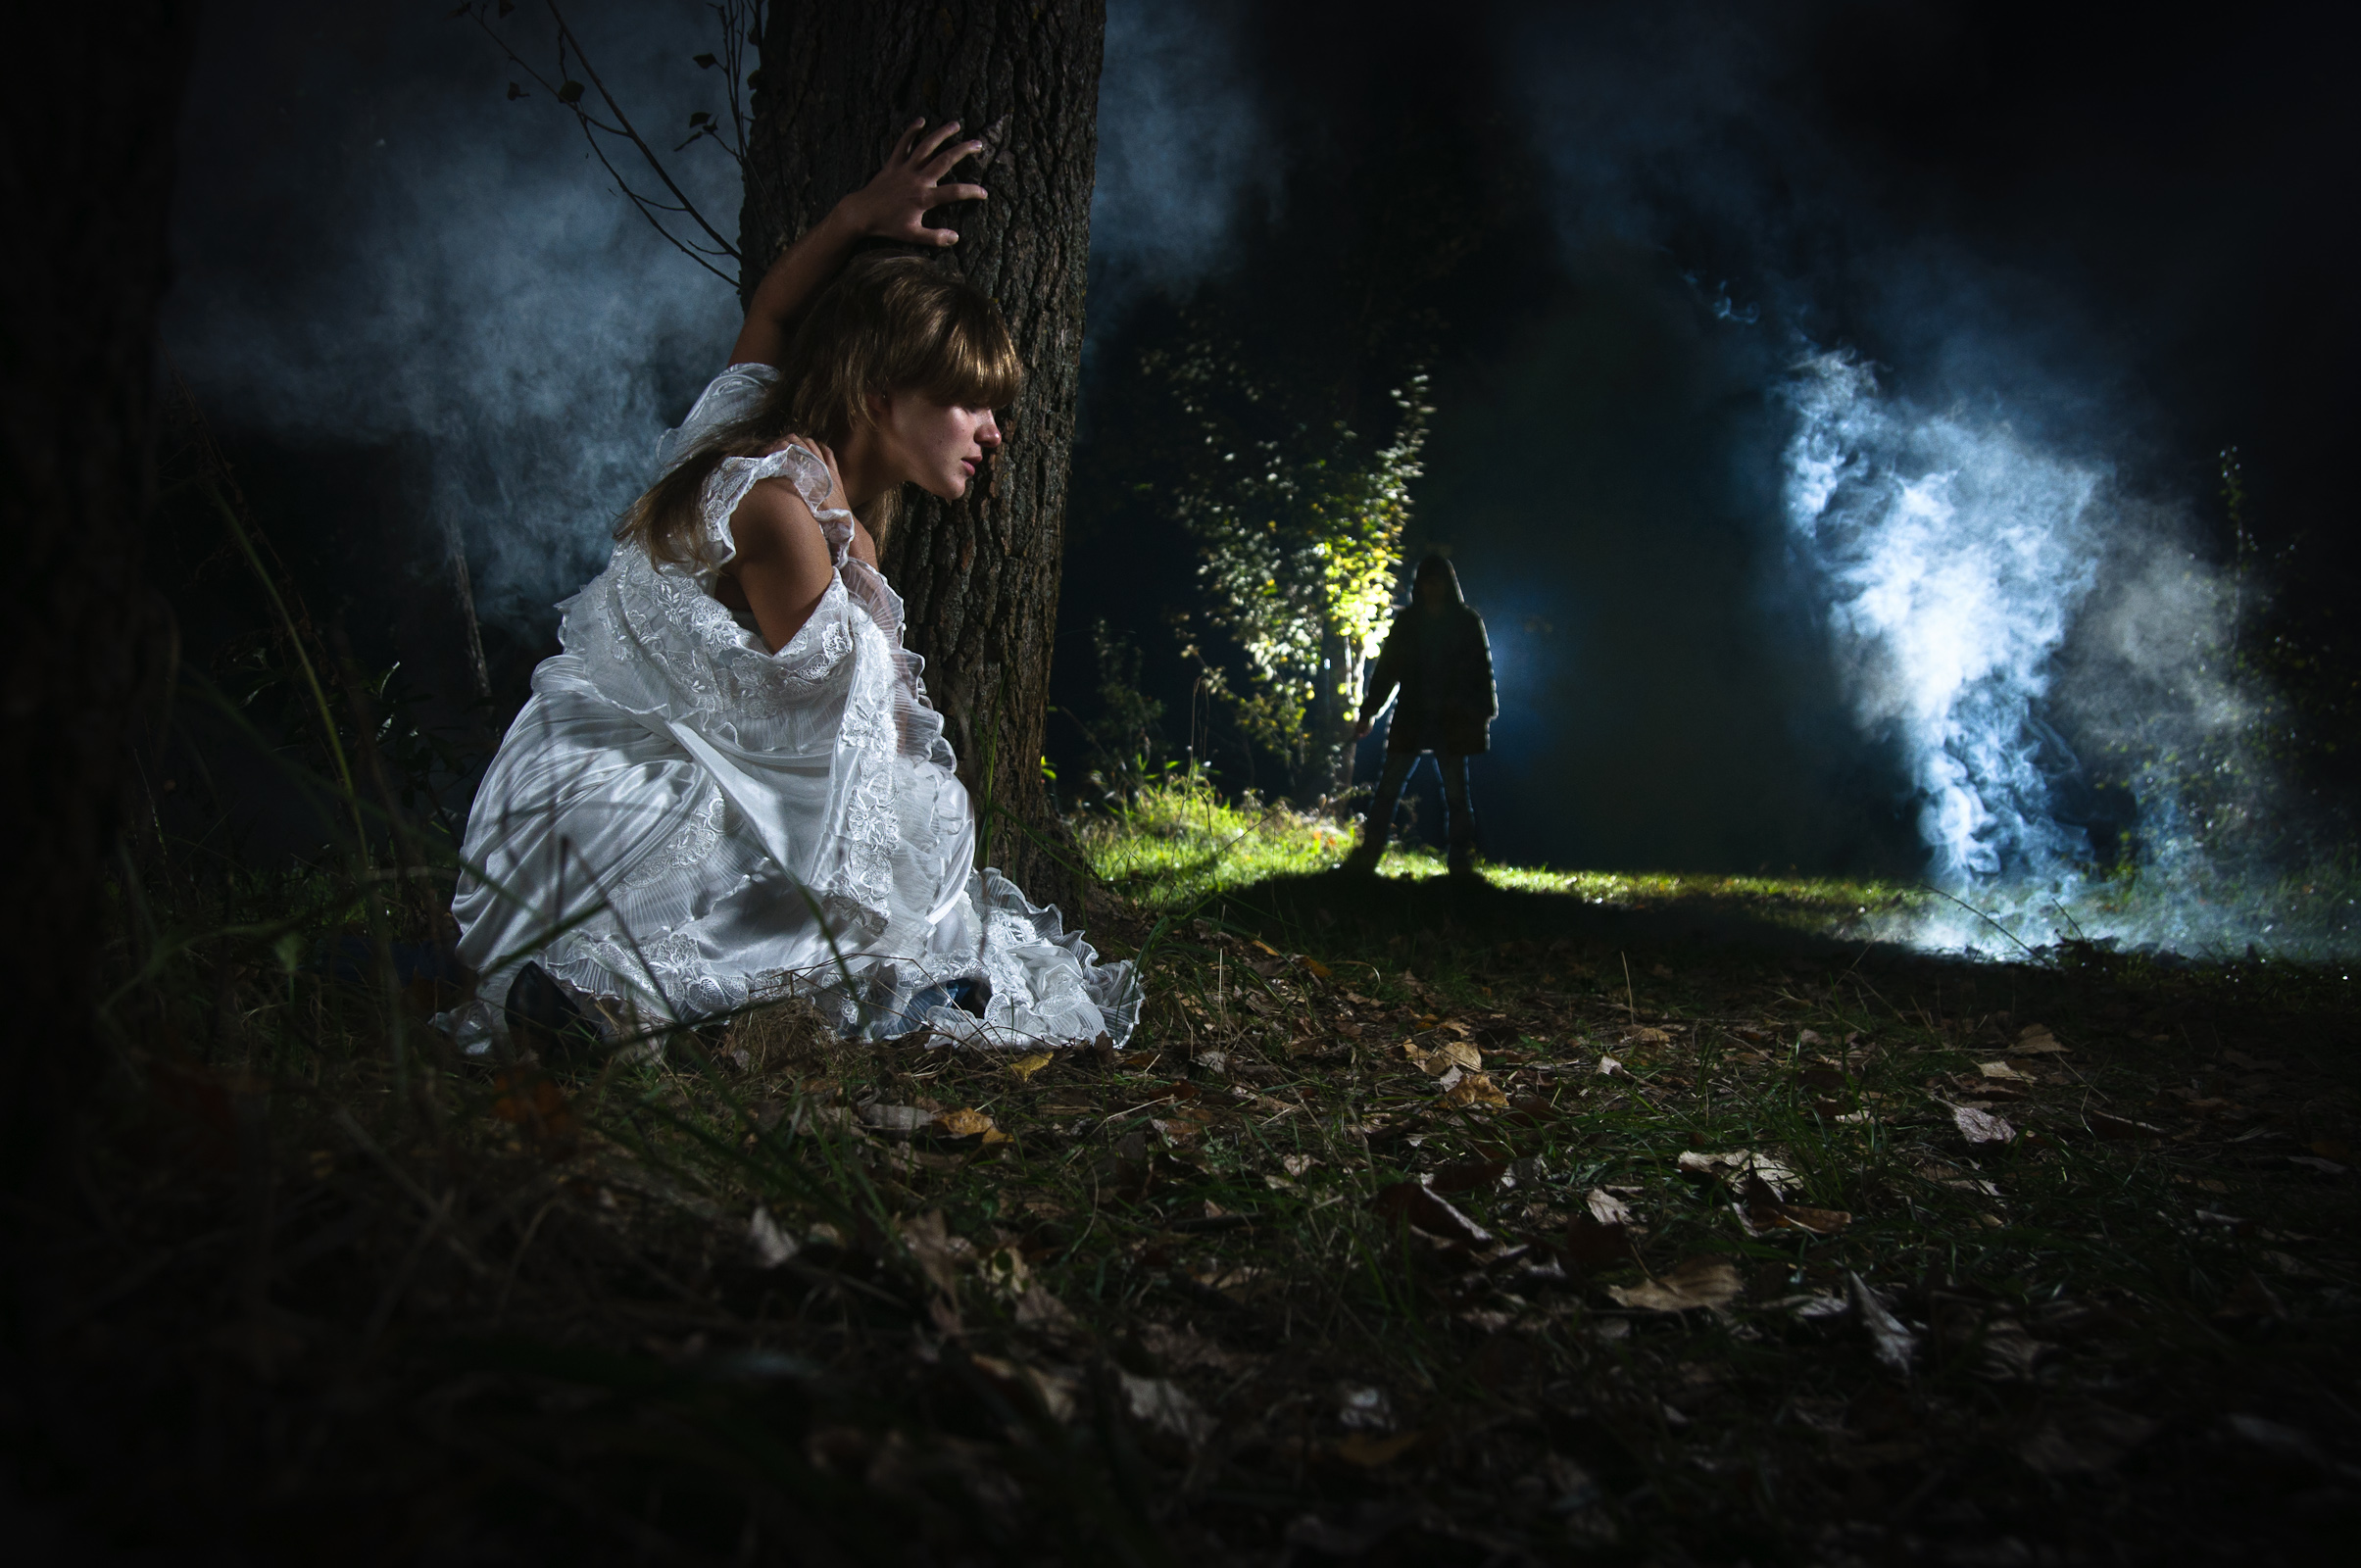 Мистические истории читать из реальной жизни людей. Лес мистика. Фотосессия ночью в лесу. Девушка с фонариком в лесу. Фотосессия в лесу мистика.